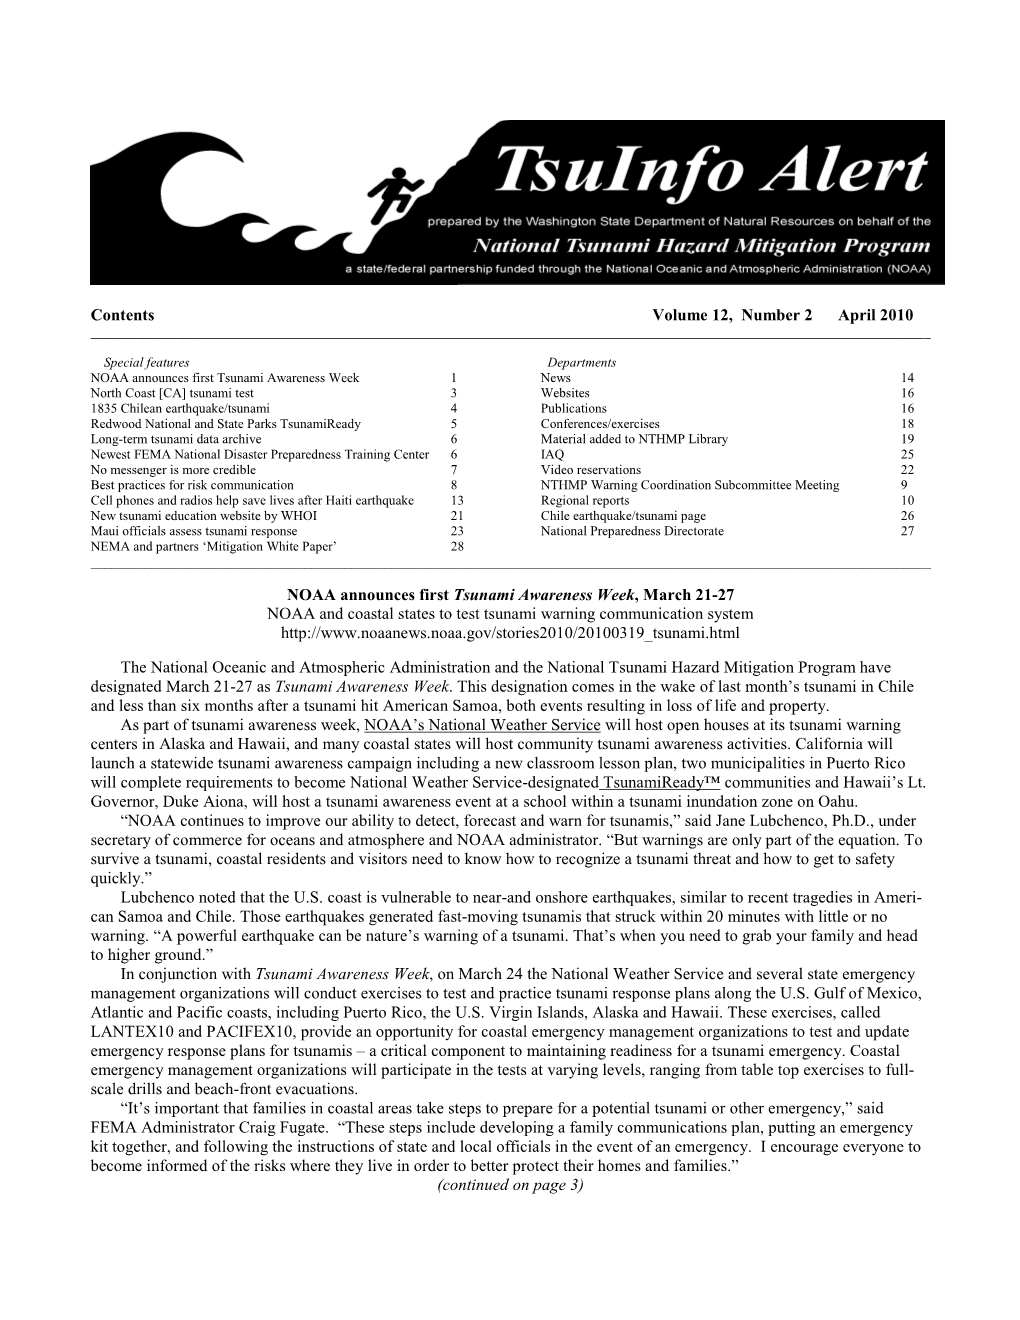 Tsuinfo Alert, April 2010